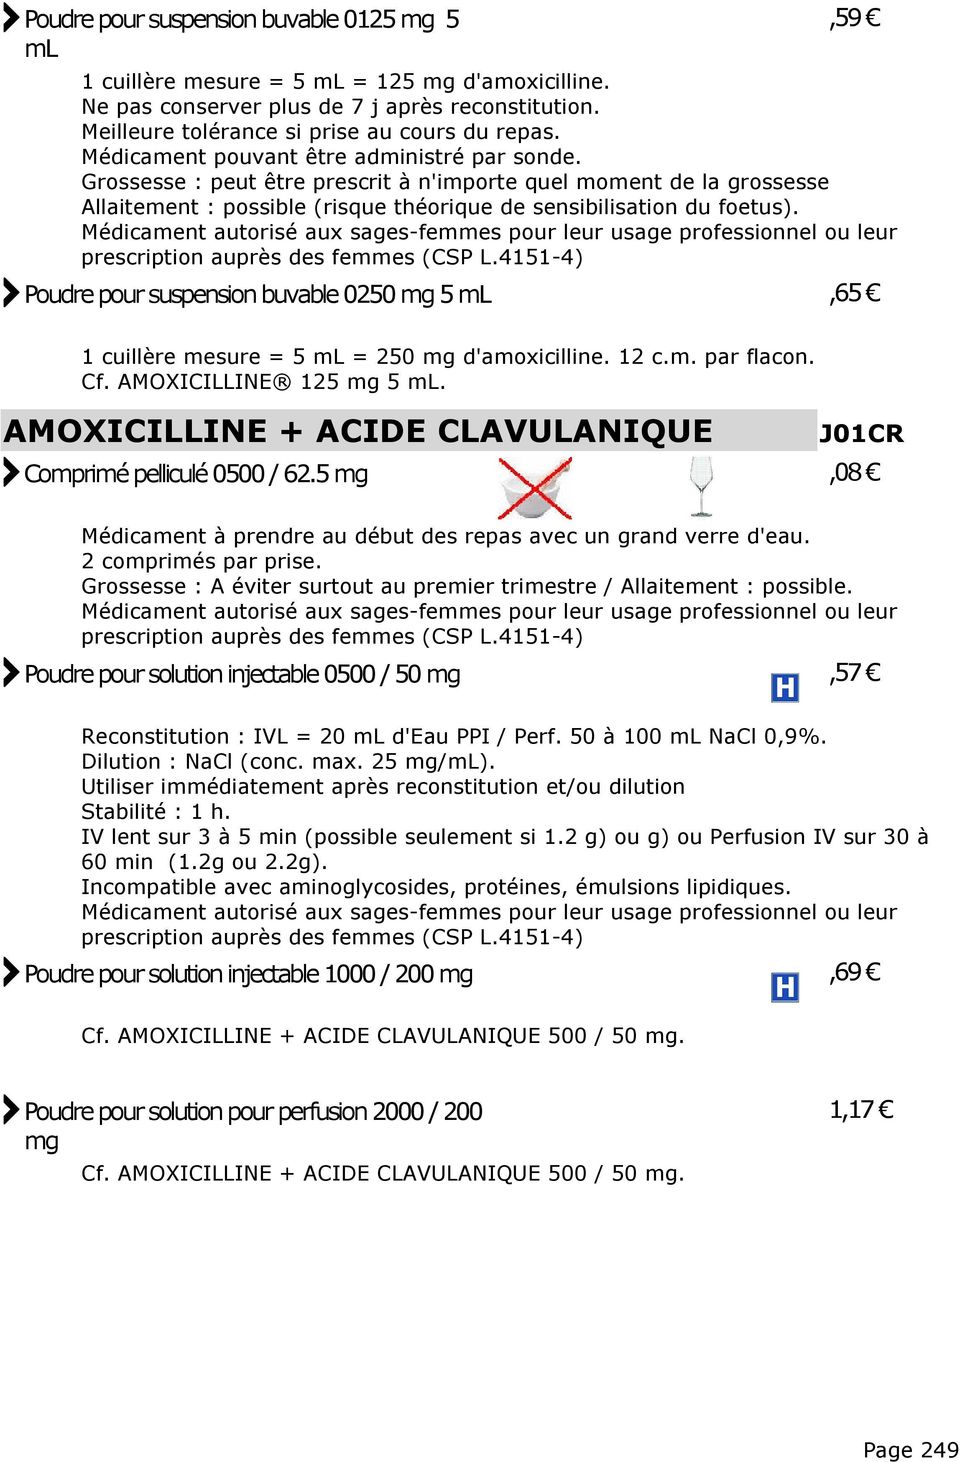 prescription auprès des femmes (CSP L.4151-4) Poudre pour suspension buvable 0250 mg 5 ml,65 1 cuillère mesure = 5 ml = 250 mg d'amoxicilline. 12 c.m. par flacon. Cf. AMOXICILLINE 125 mg 5 ml.